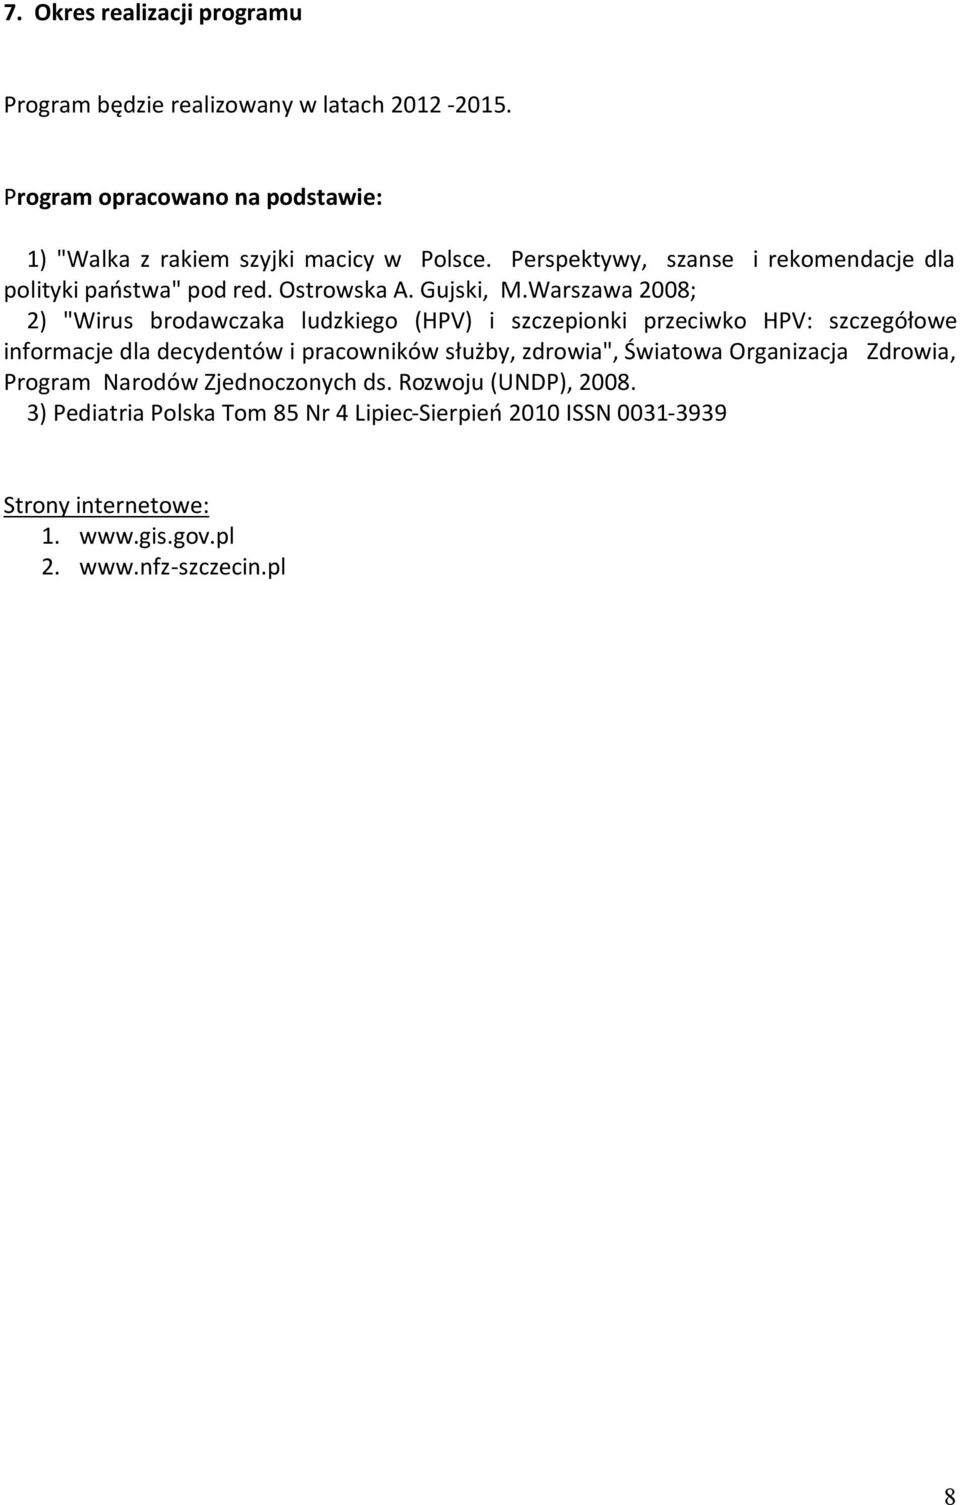 Warszawa 2008; 2) "Wirus brodawczaka ludzkiego (HPV) i szczepionki przeciwko HPV: szczegółowe informacje dla decydentów i pracowników służby, zdrowia",